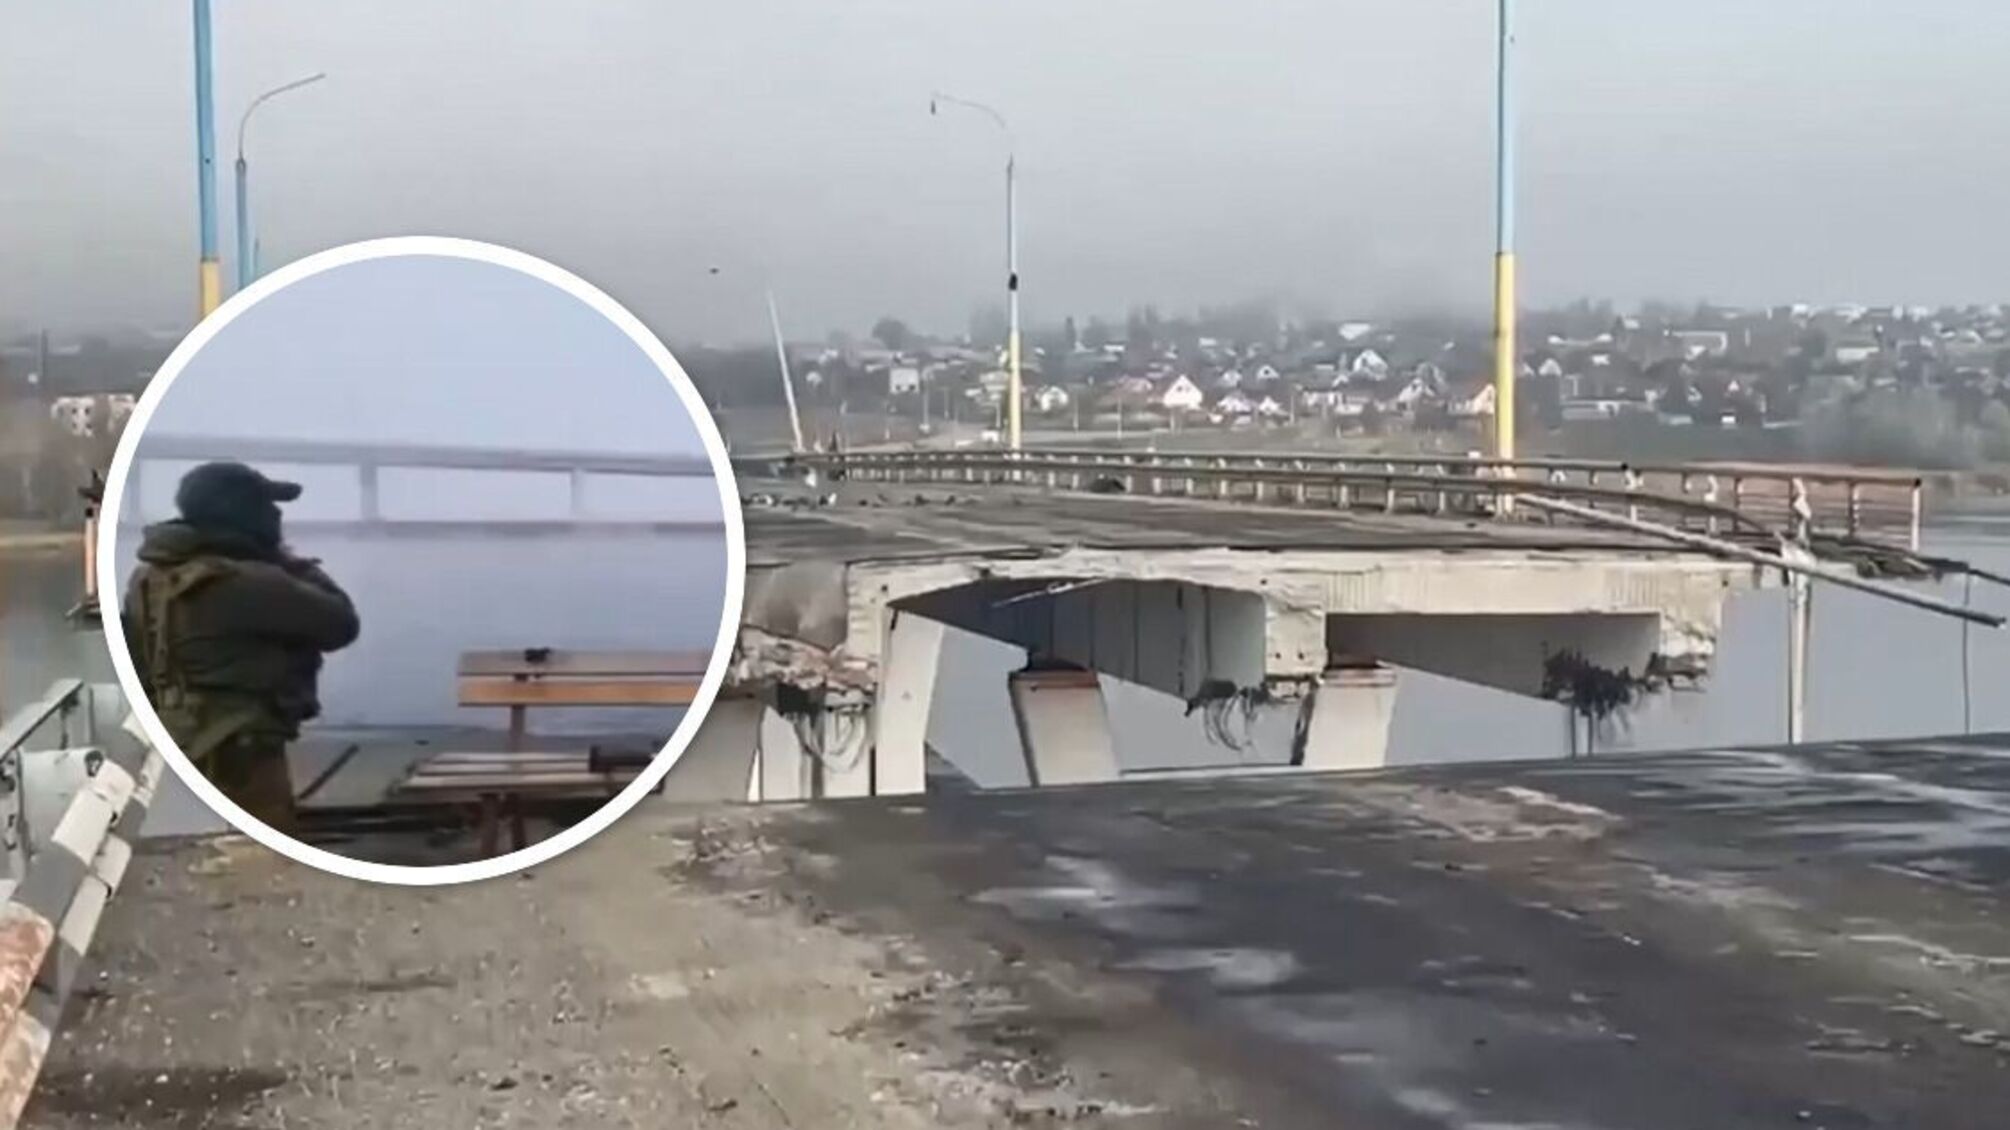 Появились кадры побега россиян из Херсона: идут пешком под Антоновским мостом (видео)